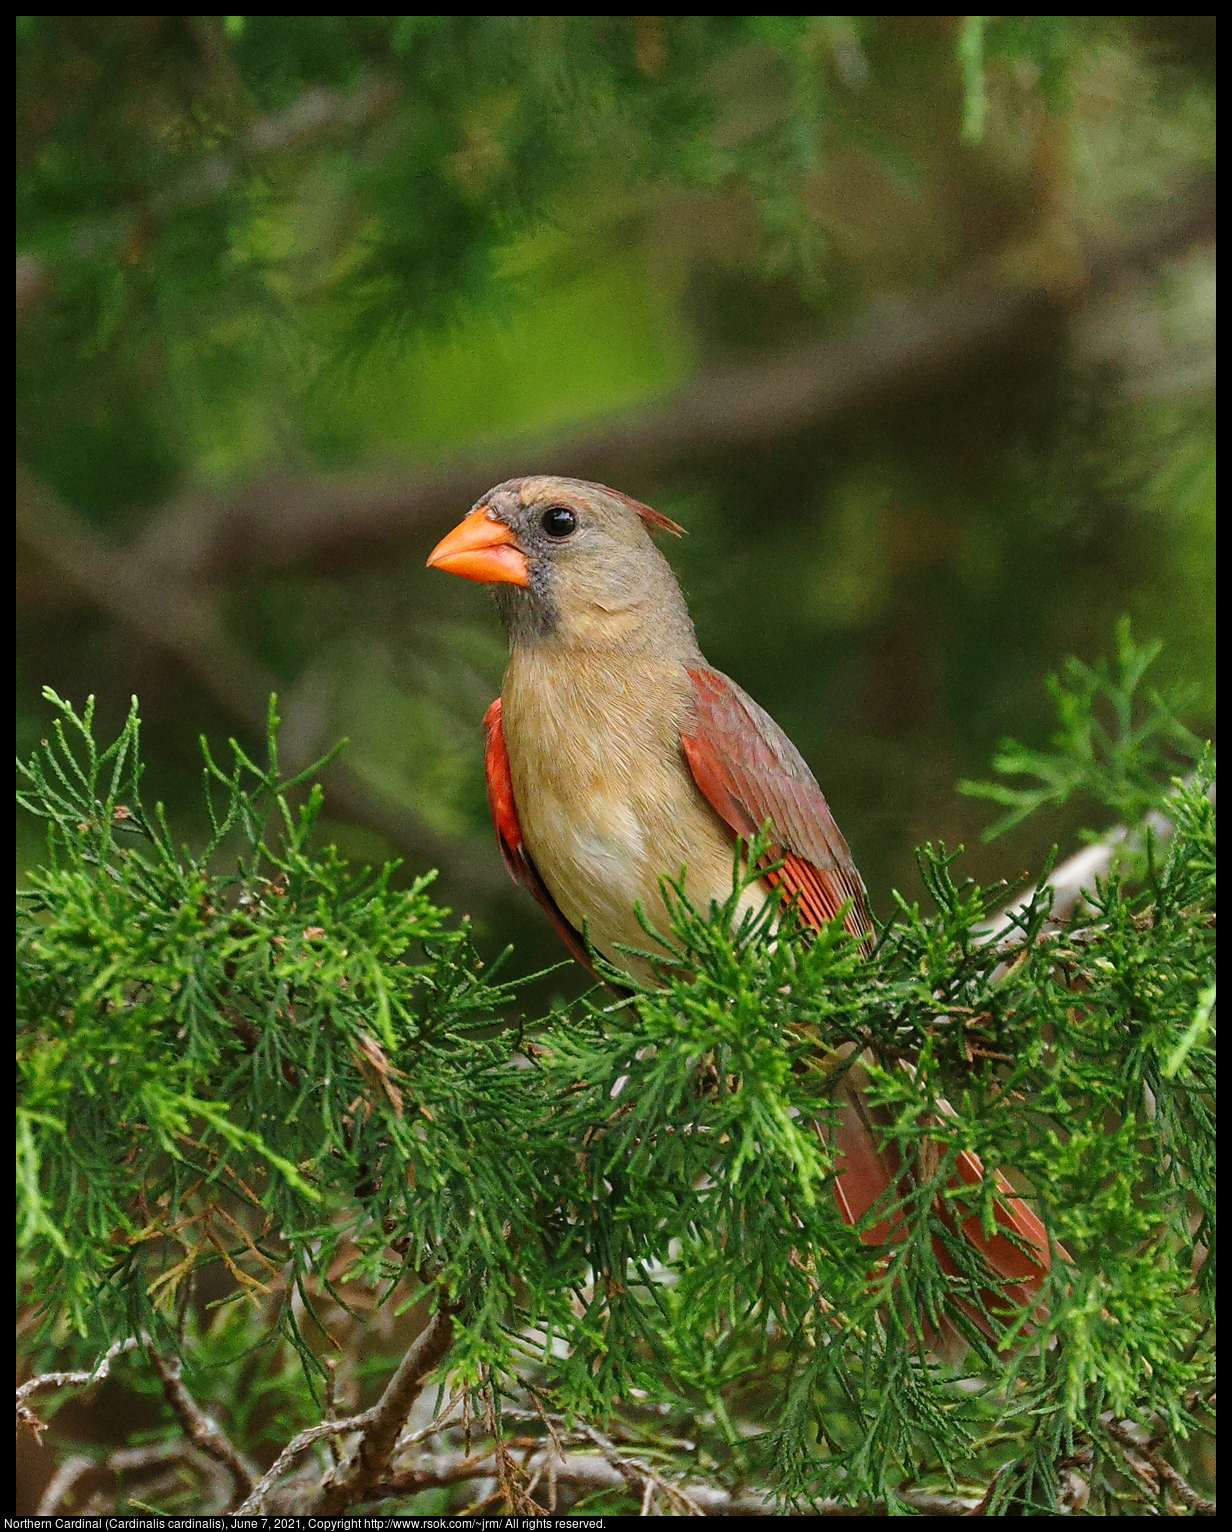 Northern Cardinal (Cardinalis cardinalis), June 7, 2021